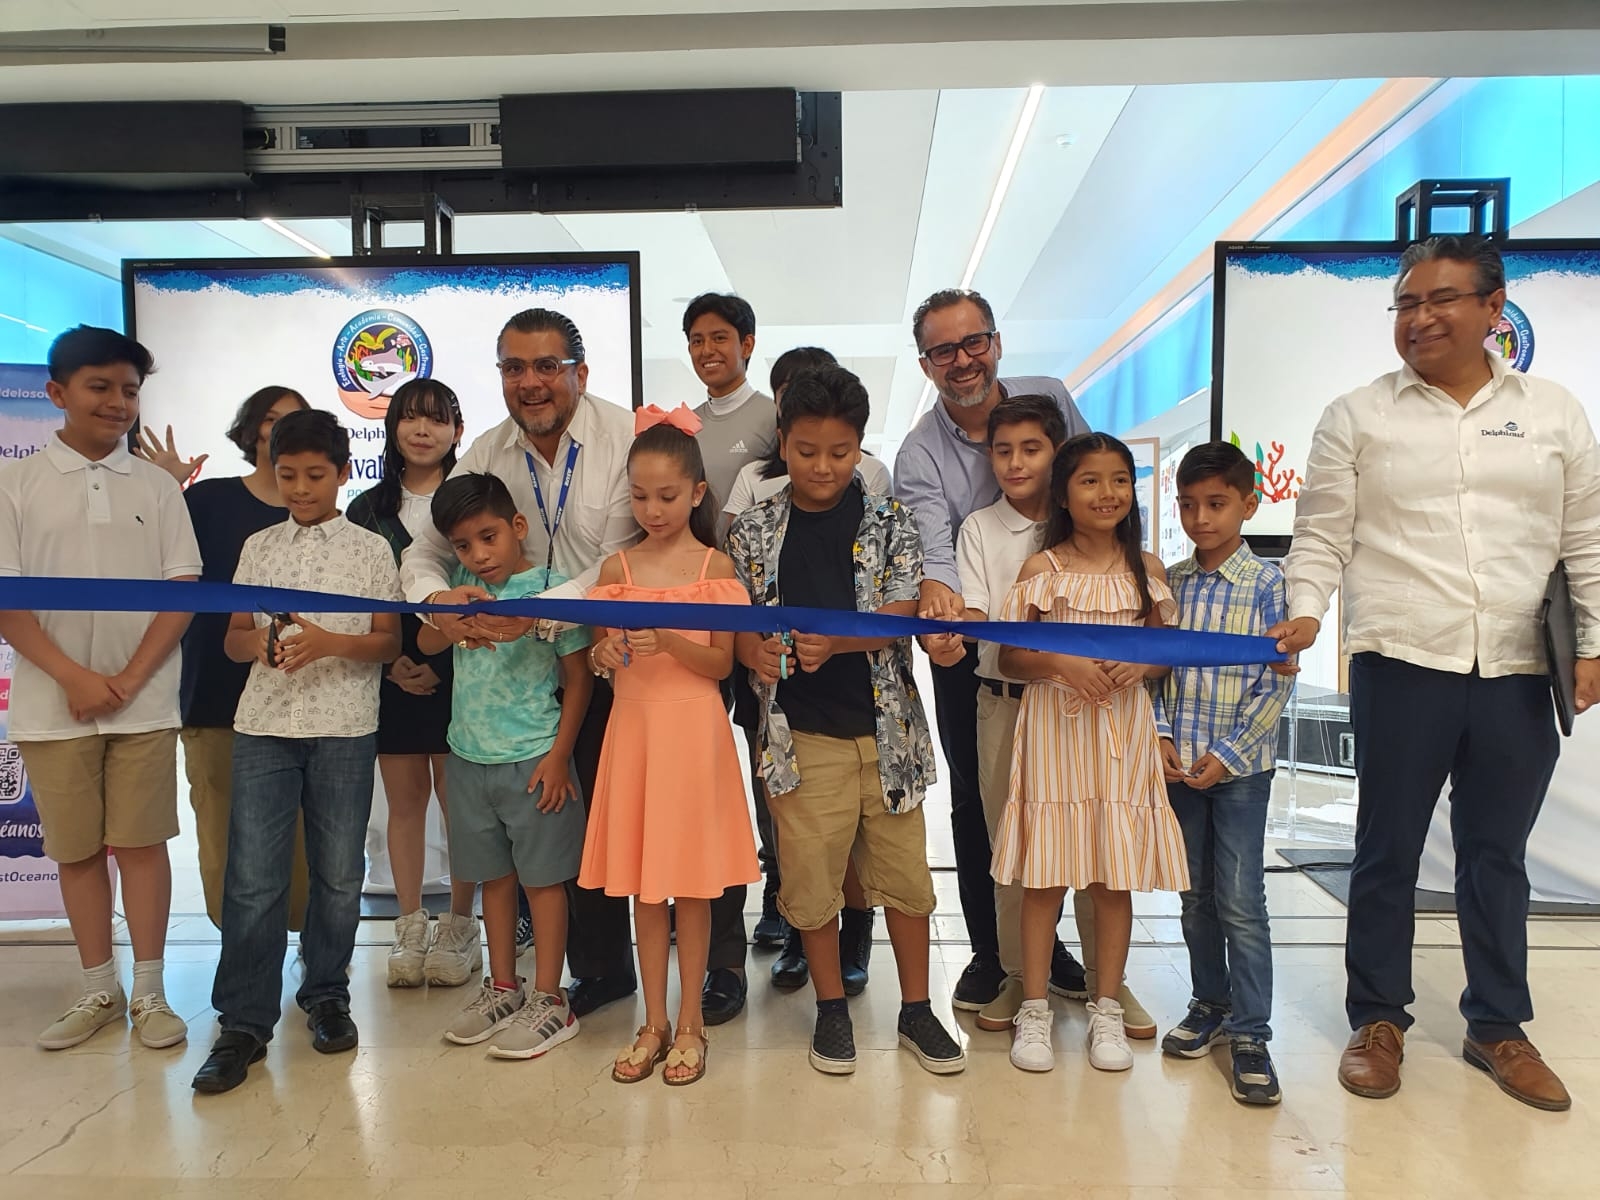 Aeropuerto de Cancún se convierte en galería de arte; exponen dibujos infantiles: EN VIVO